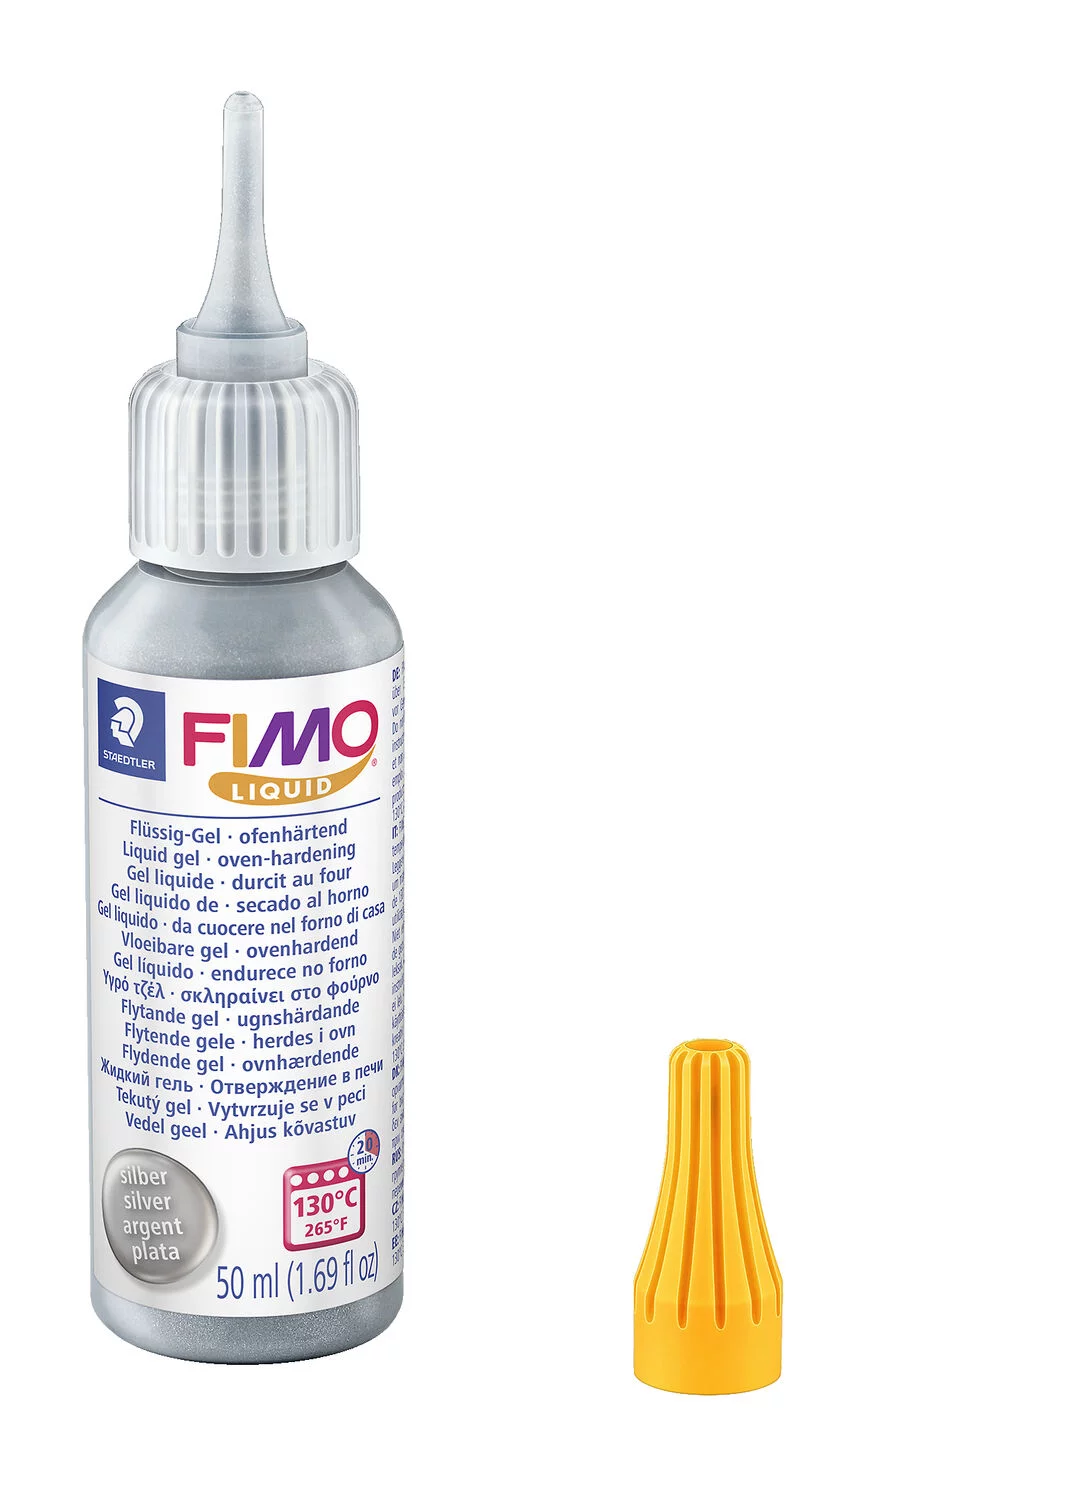 STAEDTLER Zubehör FIMO Liquid Gel, ofenhärtendes Gel, fließfähige Konsistenz, 50 ml, silber